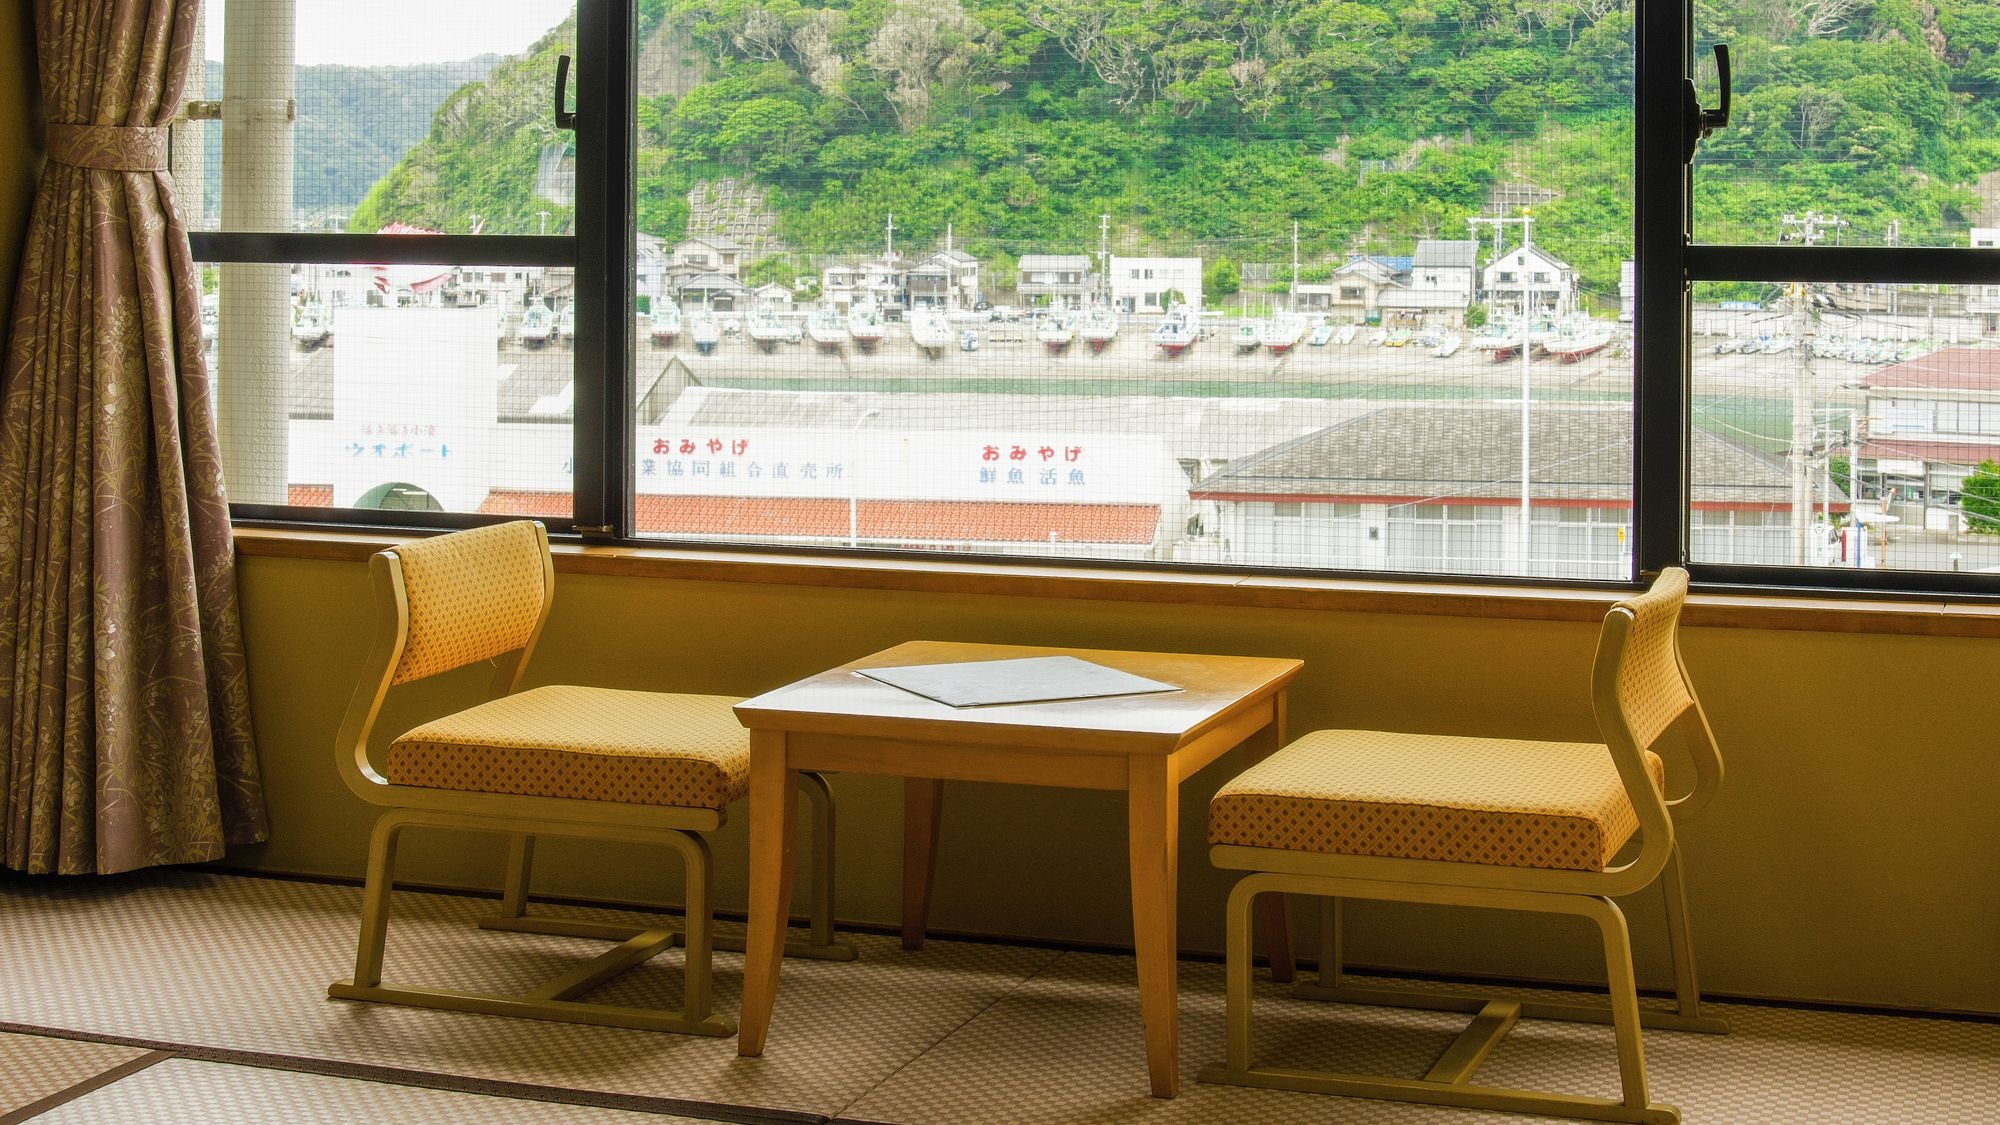 [夢亭] 海港邊的日式房間 10張榻榻米 <海港景觀> 這是一個海港邊的客房，適合那些不在乎風景的人。我幾乎看不到海